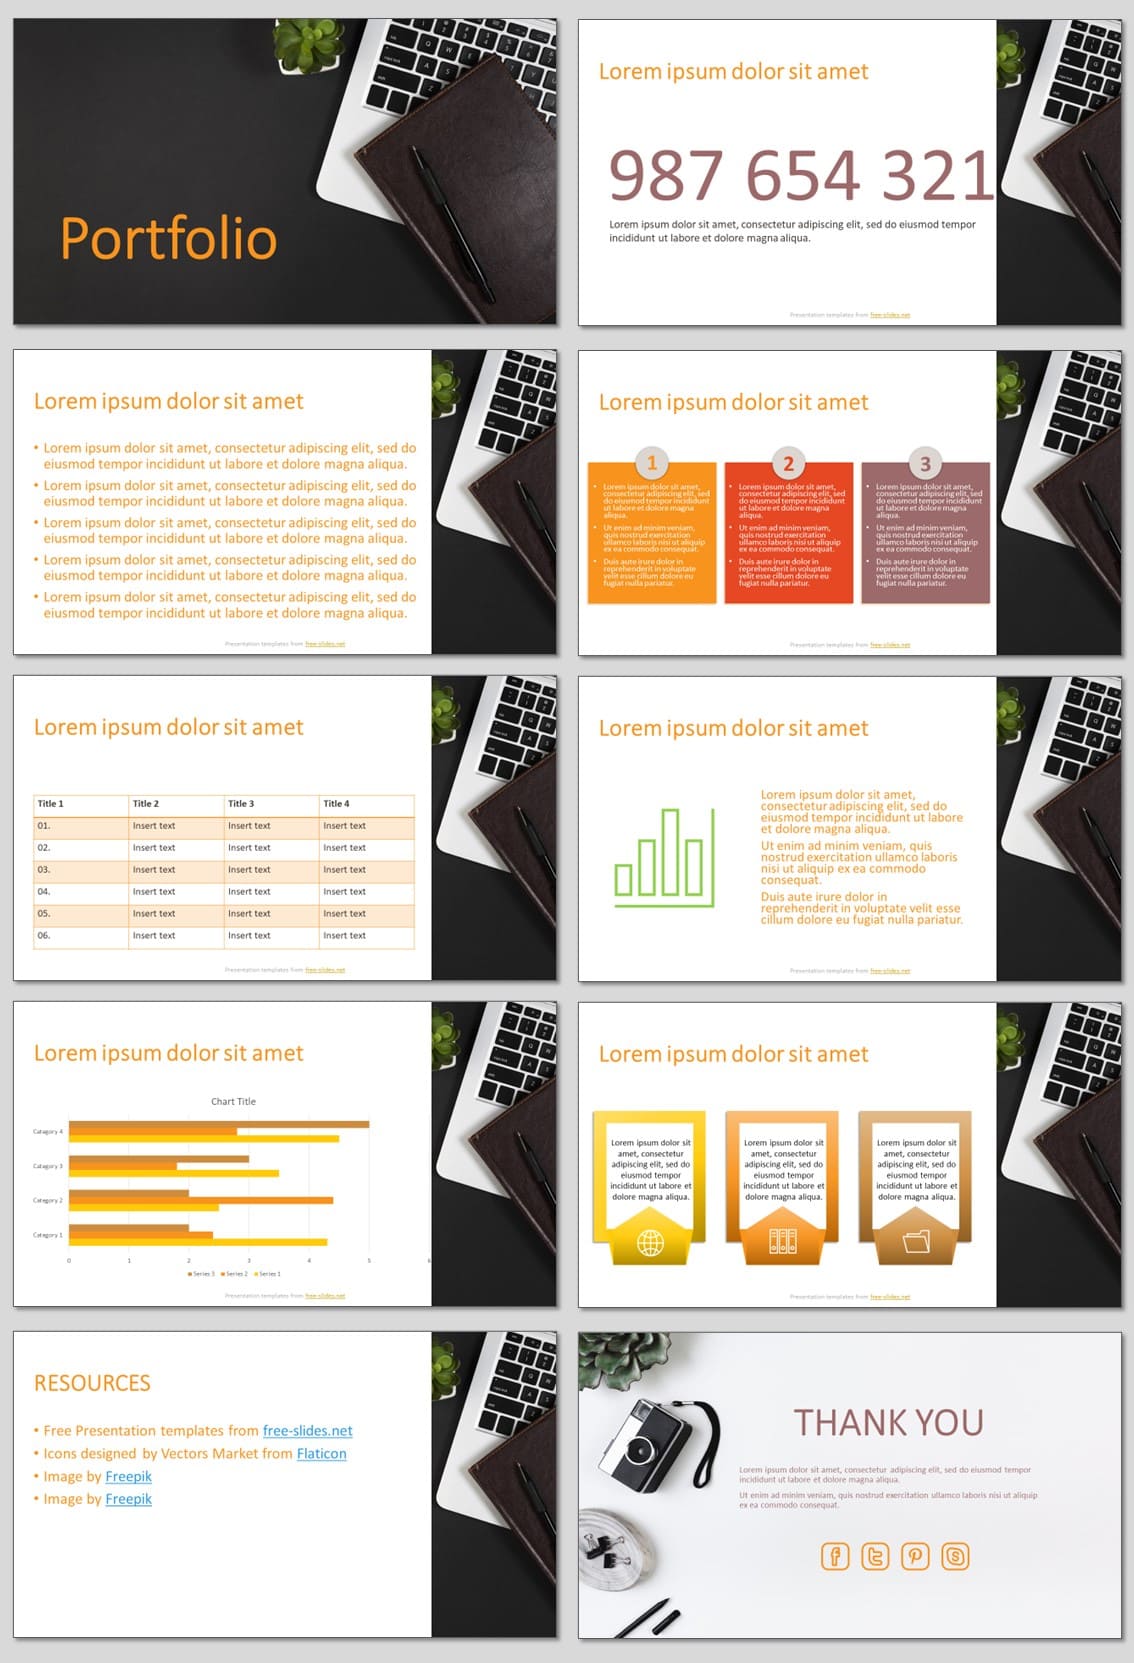 Portfolio - Free PowerPoint Template and Google Slides Theme